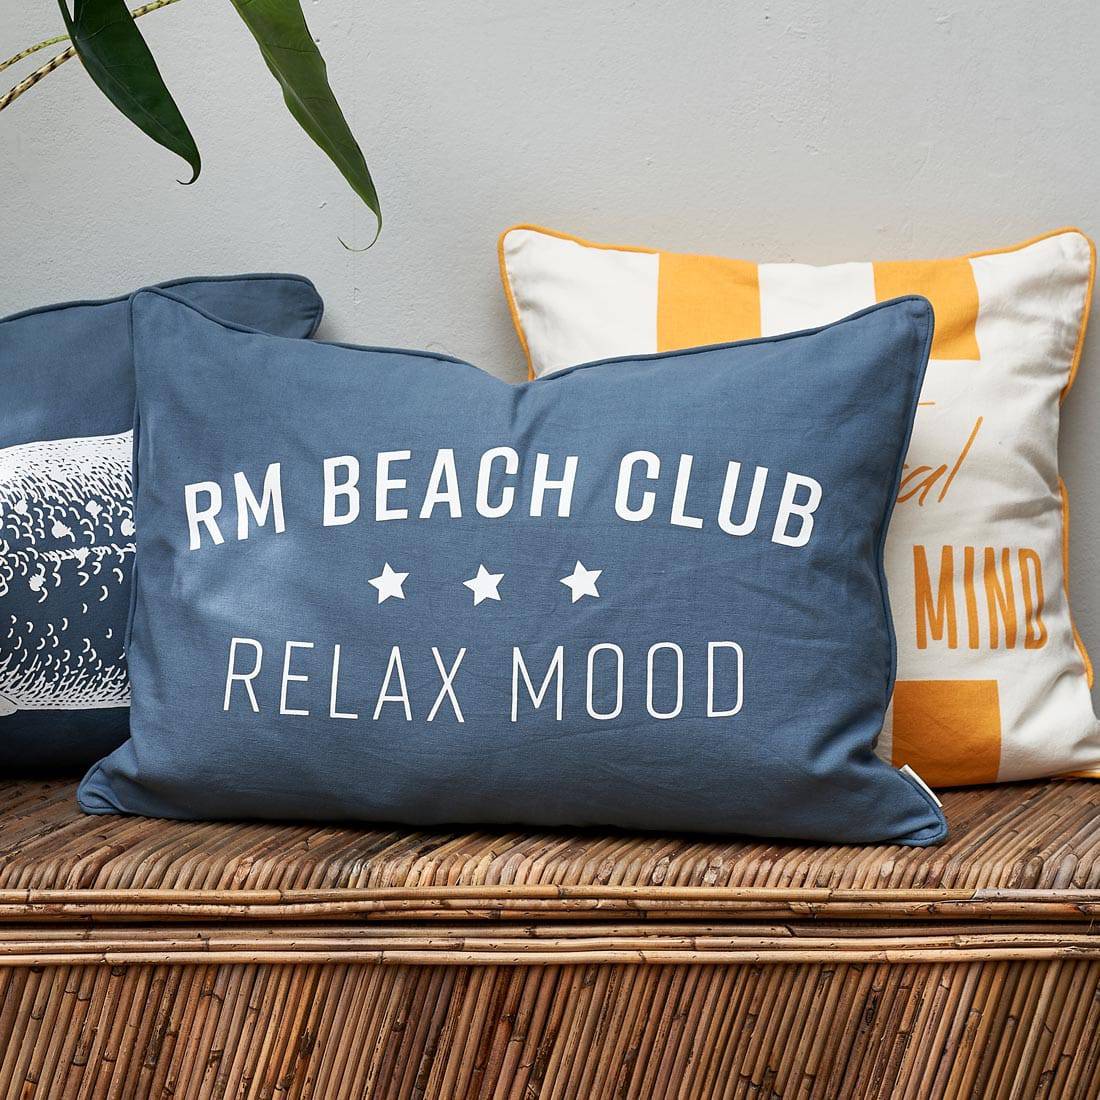 Rm Beach Club I Kissenhülle Für Draußen Freudenreich World Of Interior Interior Design